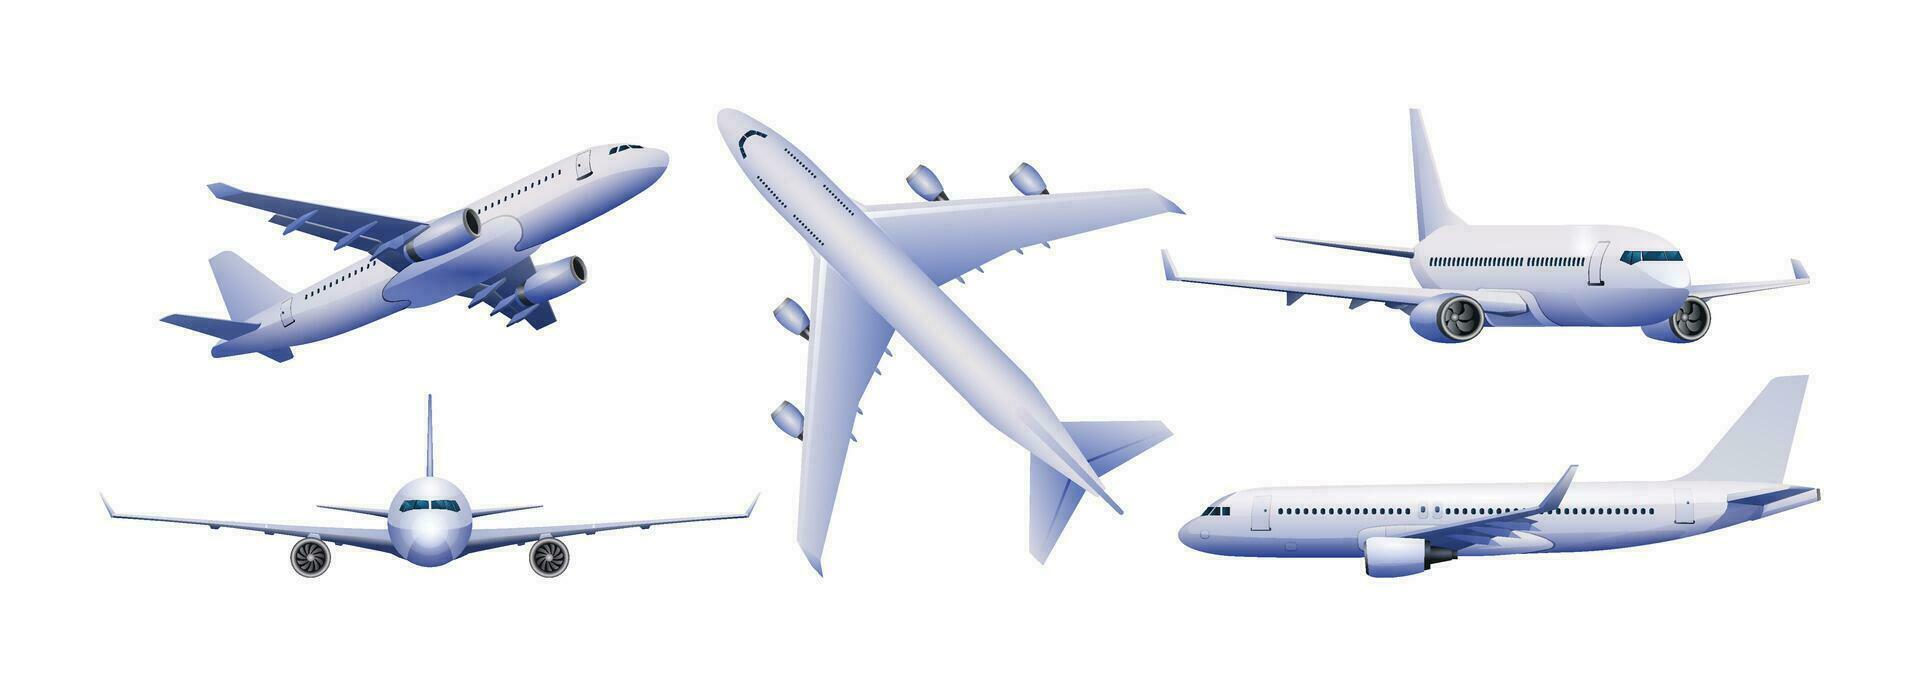 samling av flygplan i annorlunda visningar vektor illustration. flygplan isolerat på vit bakgrund